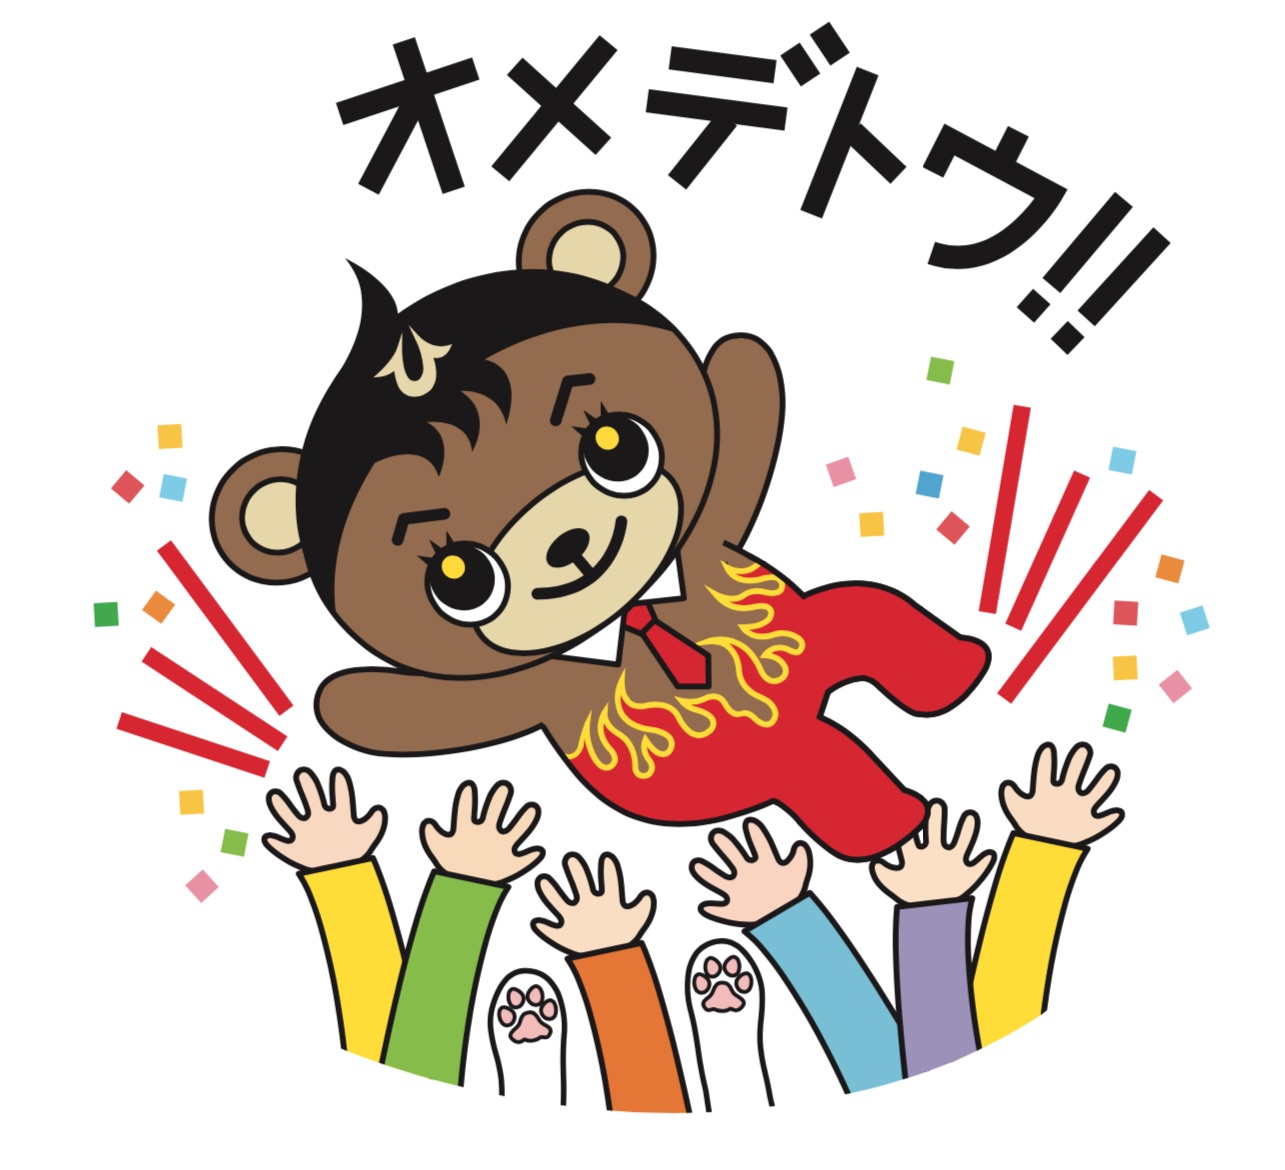 津山市議会議員選挙 みうらひらく当選の報告 感謝と決意表明 みうらひらくブログ